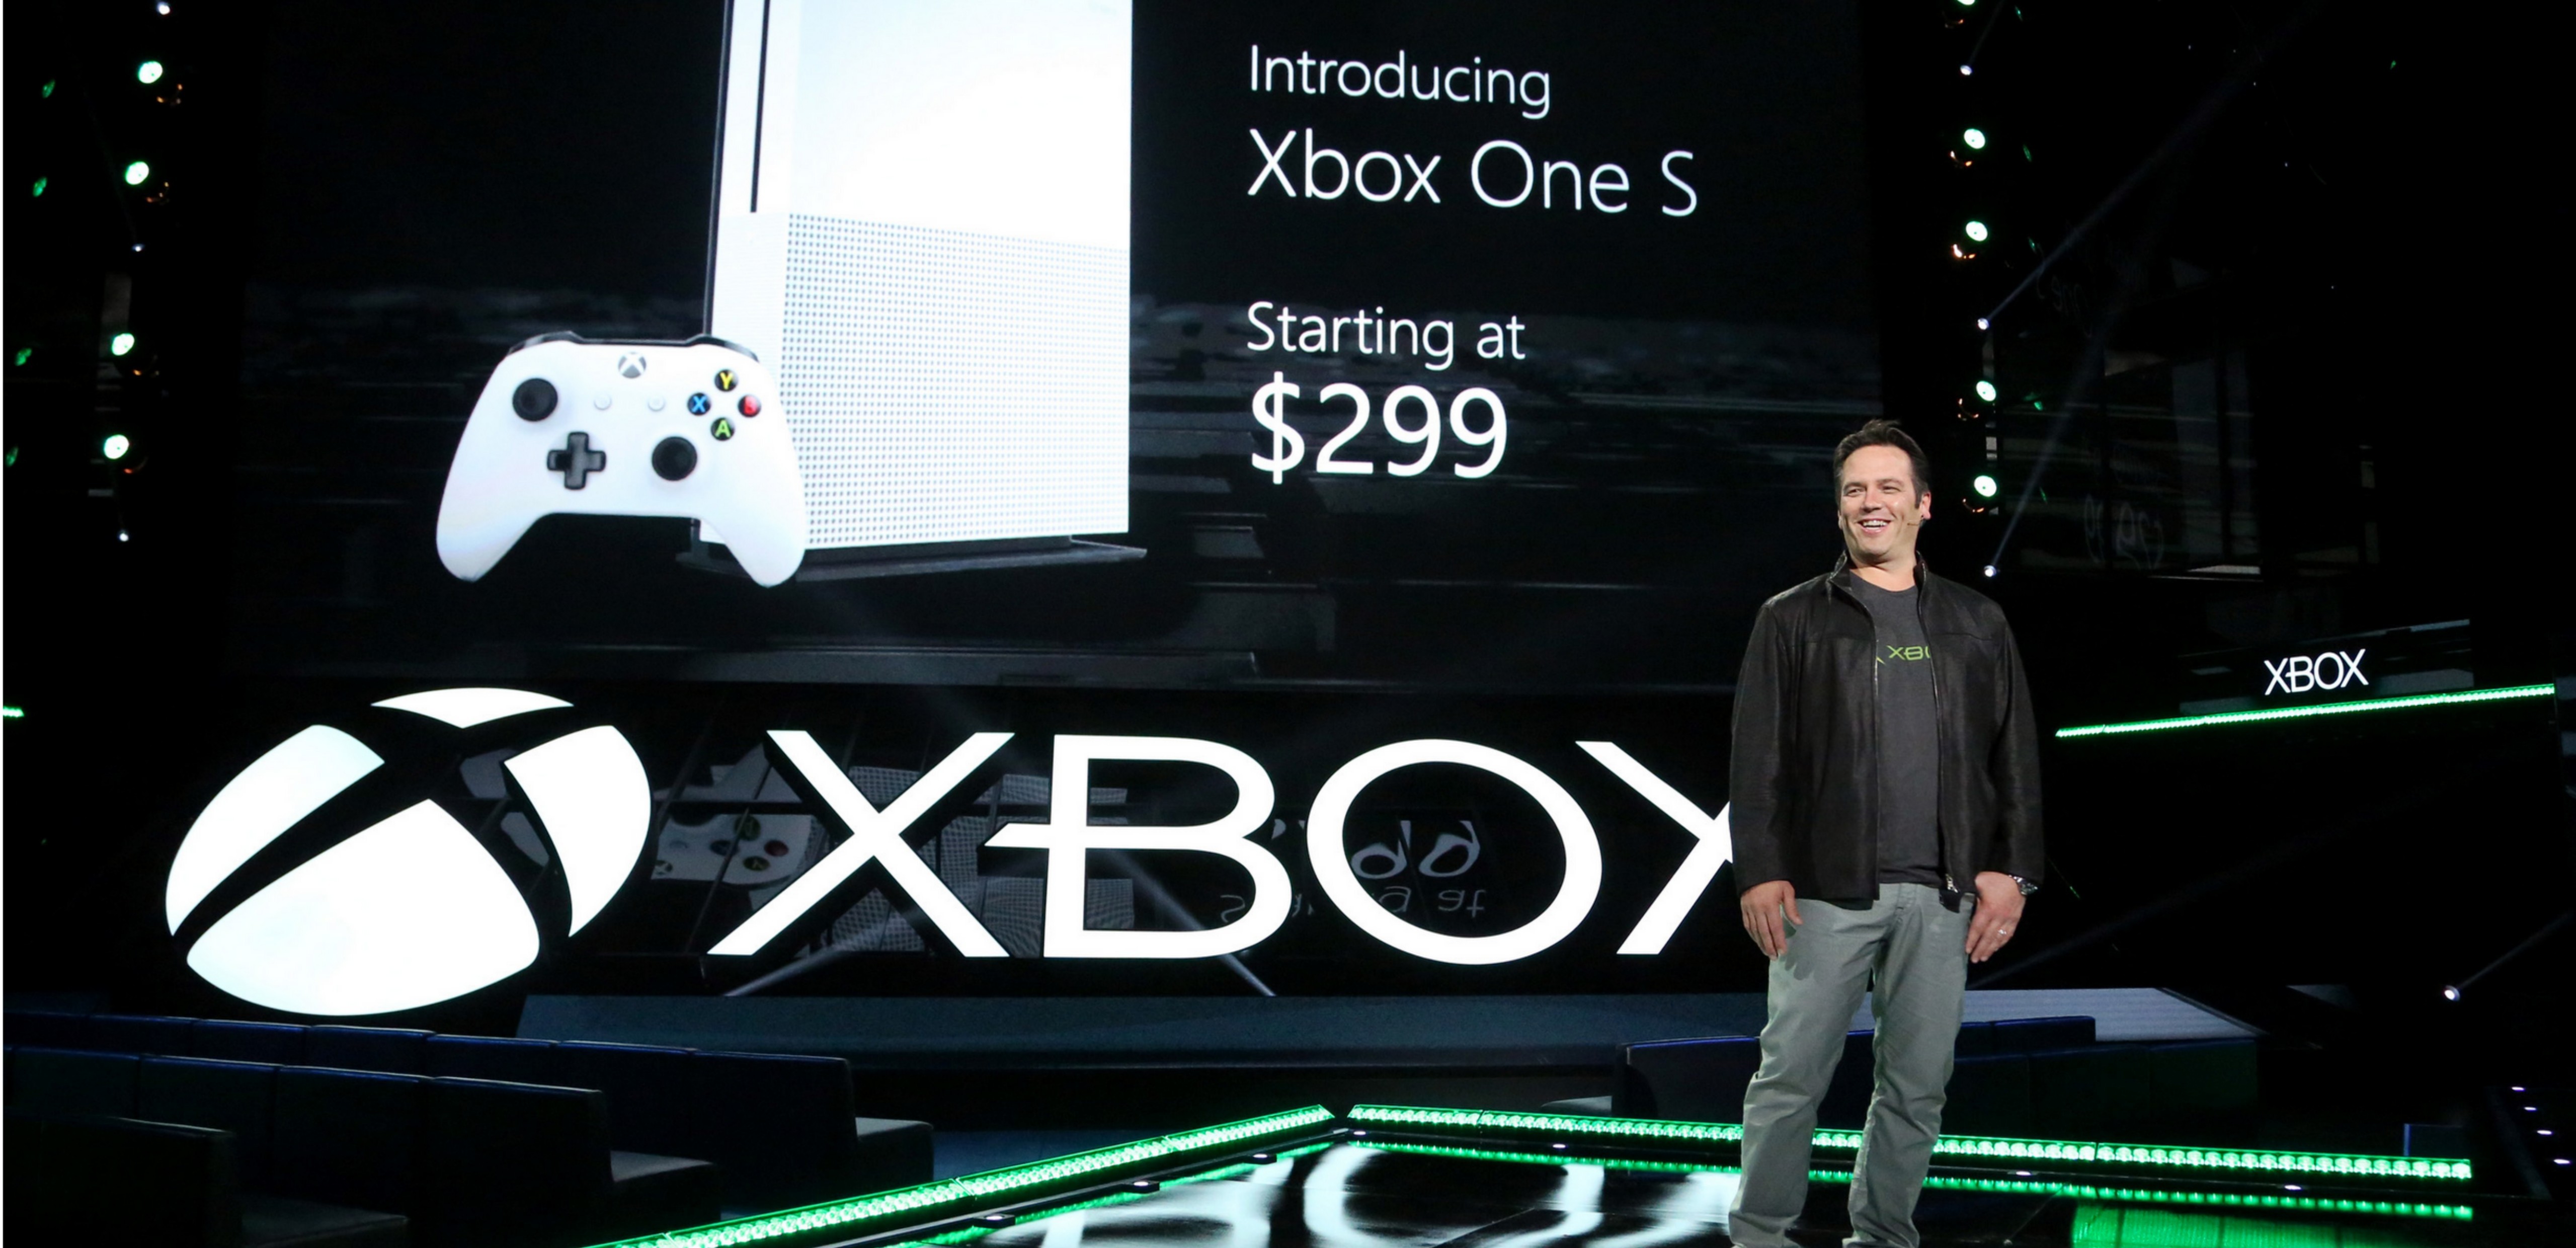 Xbox at E3 2016